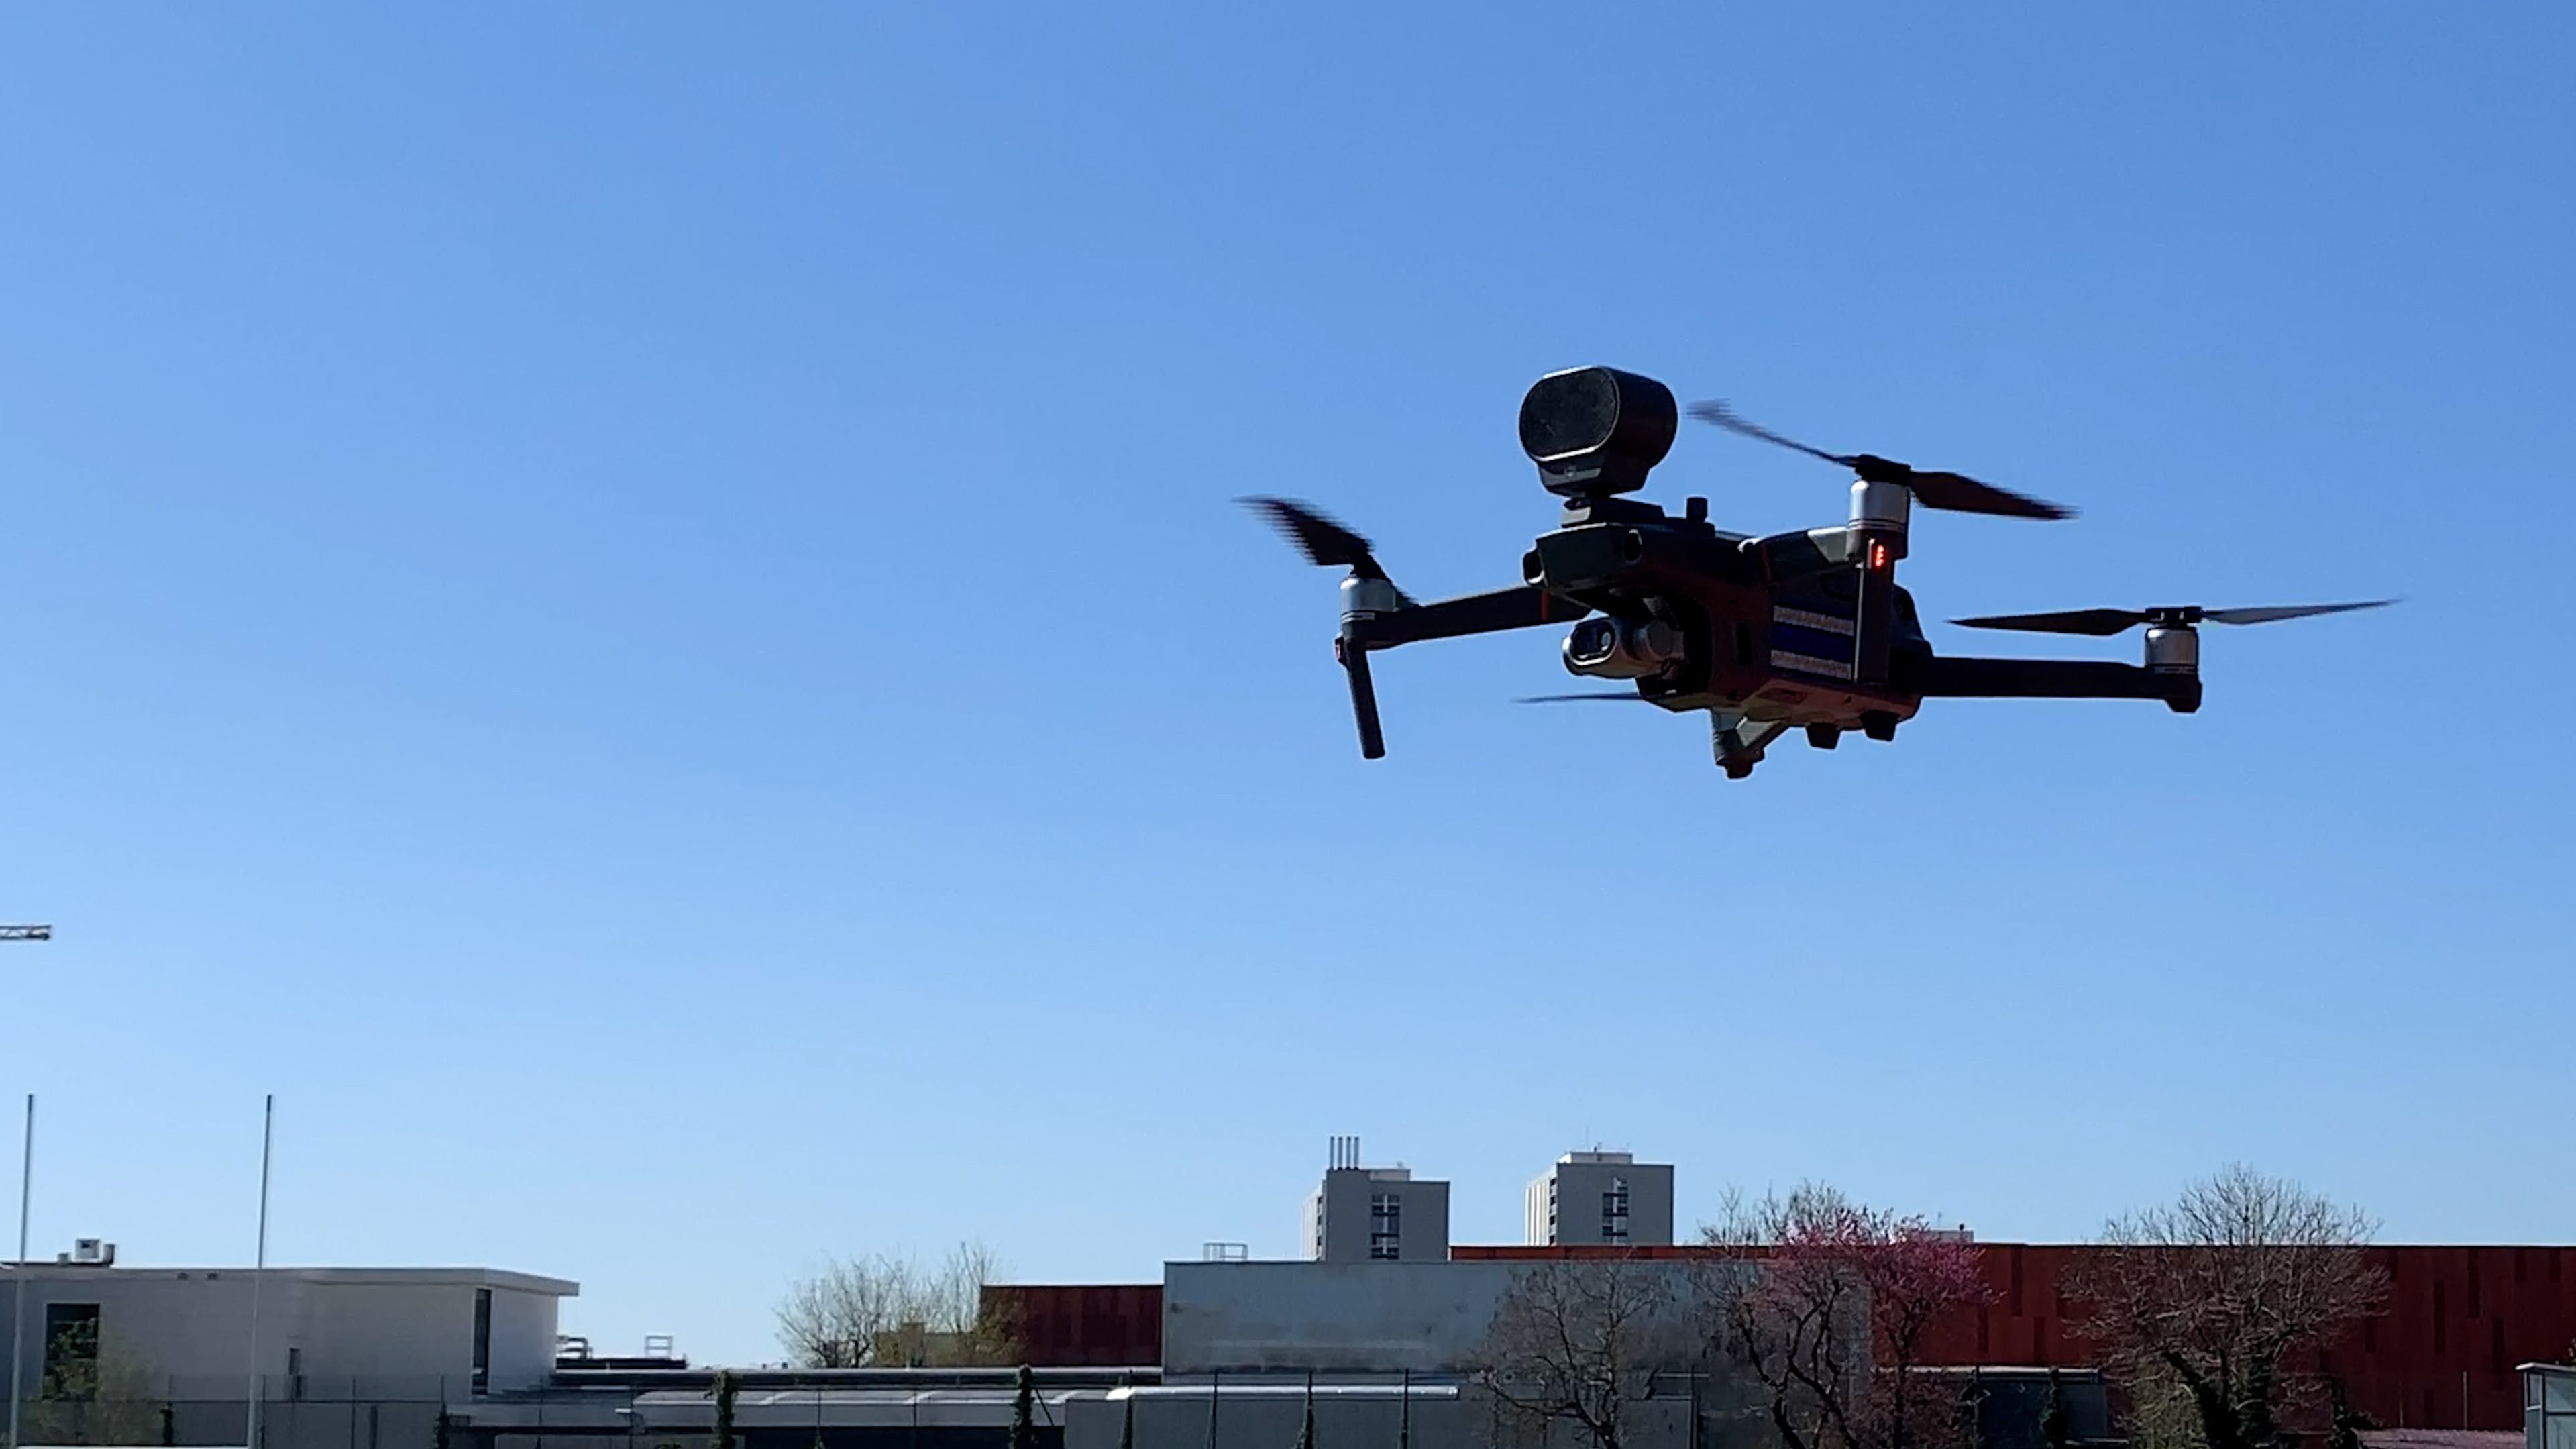 Dronisos : record du monde, 200 drones en intérieur à Turin